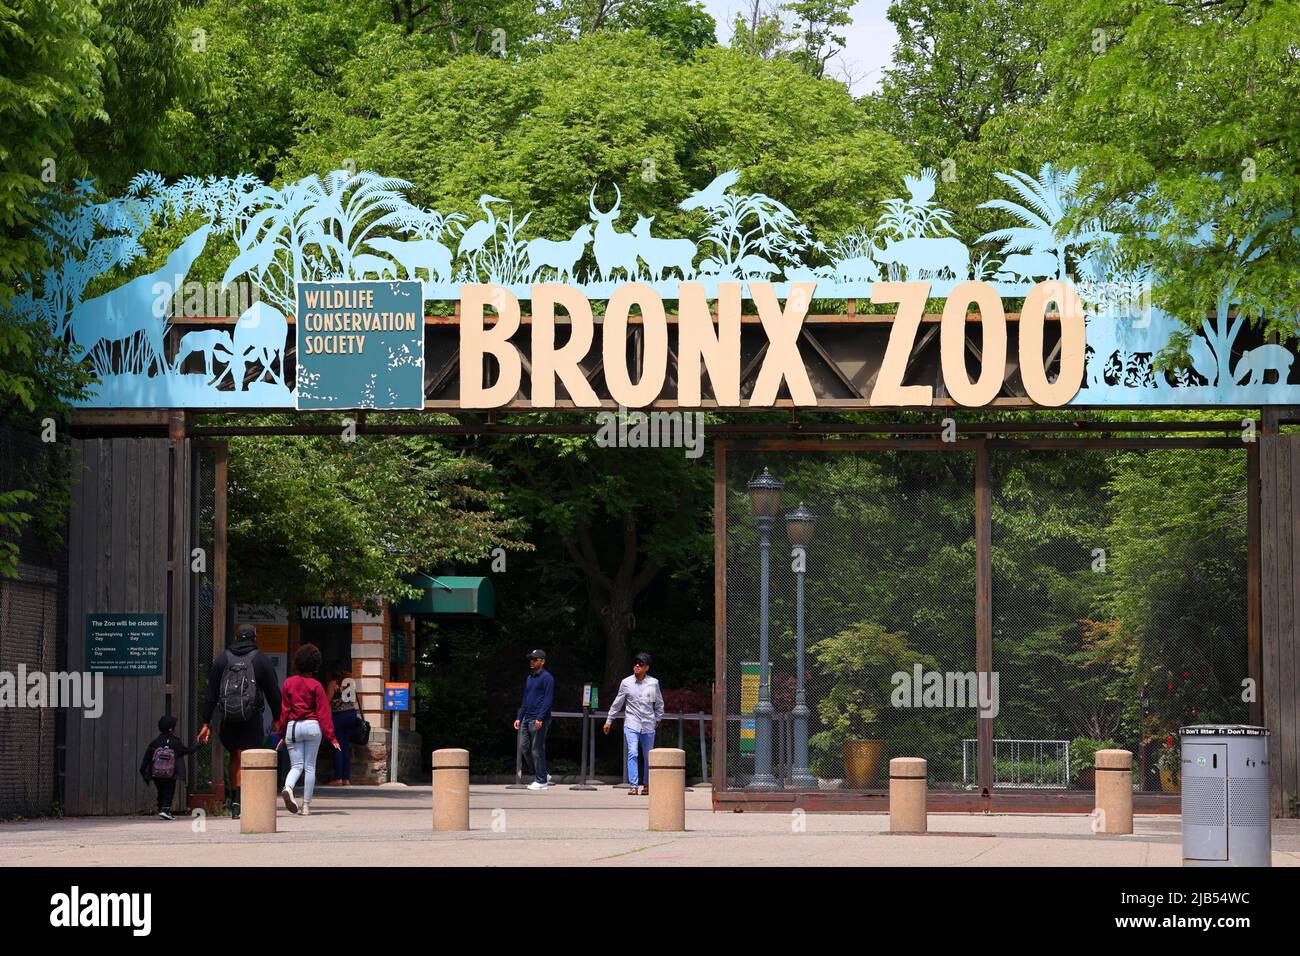 Personas que entran en el zoológico del Bronx a través de la Puerta de Asia. El Bronx Zoo es un gran zoológico urbano en la ciudad de Nueva York, administrado por la Wildlife Conservation Society Foto de stock